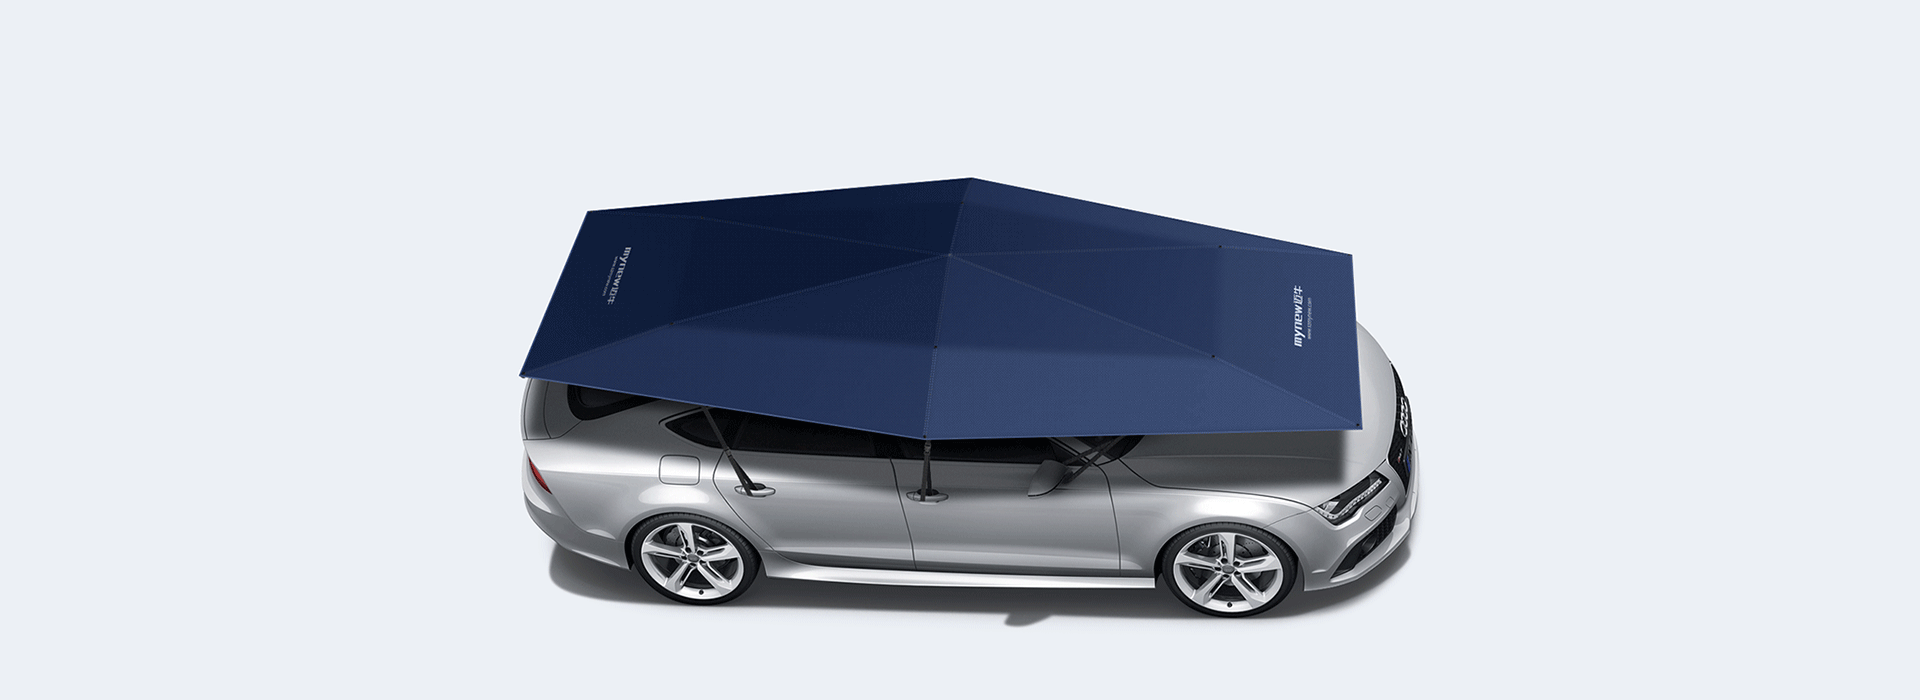 4.5meter-automatic-car-umbrella-Big-cover